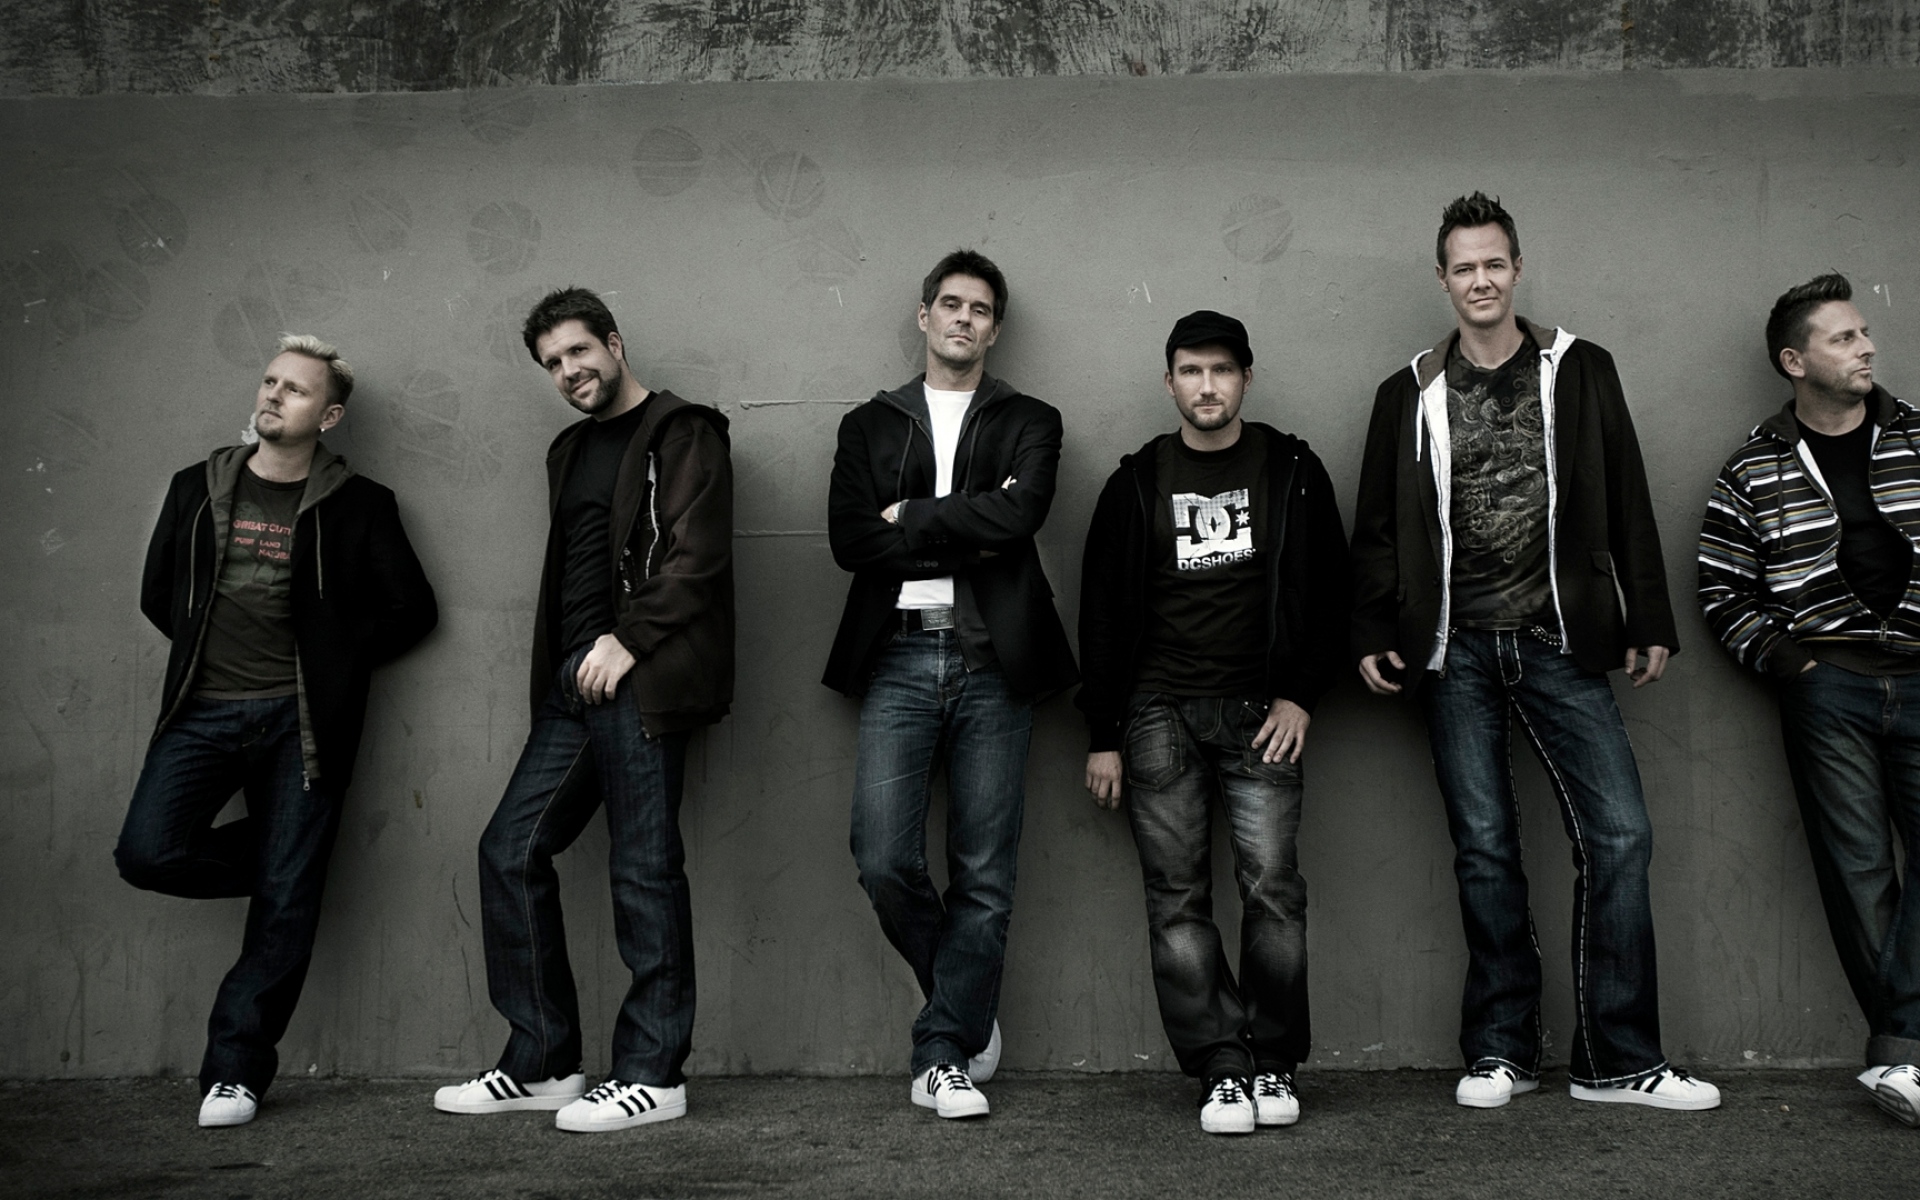 The new six группа. Adamlar группа. Музыкальные группы у стены. Группа фото на стене. The Six группа.